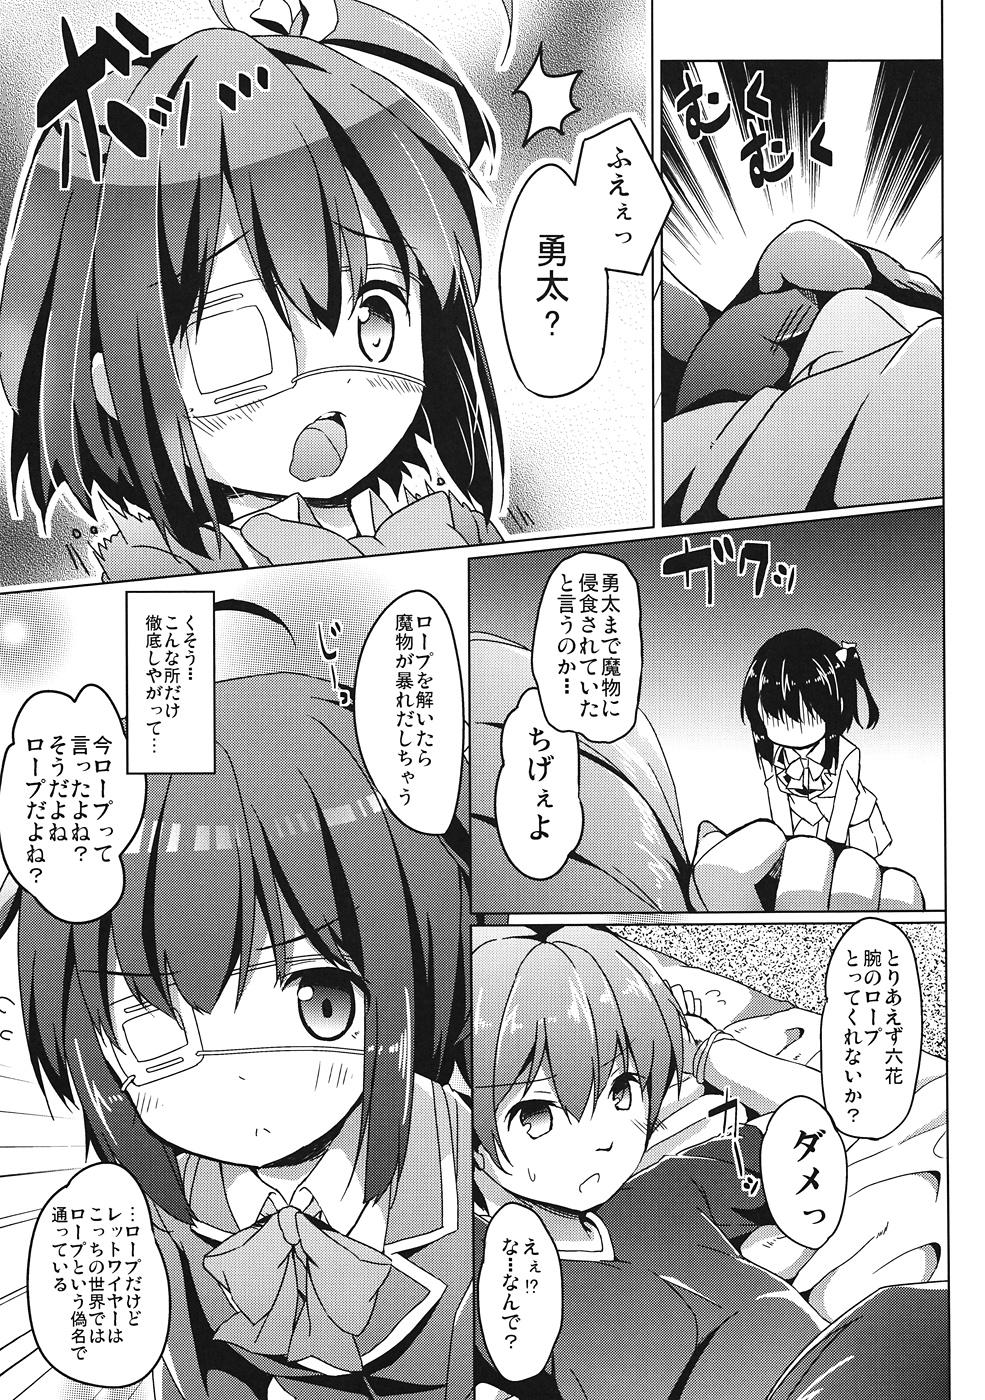 White Girl Rikka-chan wa Koi ga Shitai - Chuunibyou demo koi ga shitai Gapes Gaping Asshole - Page 6